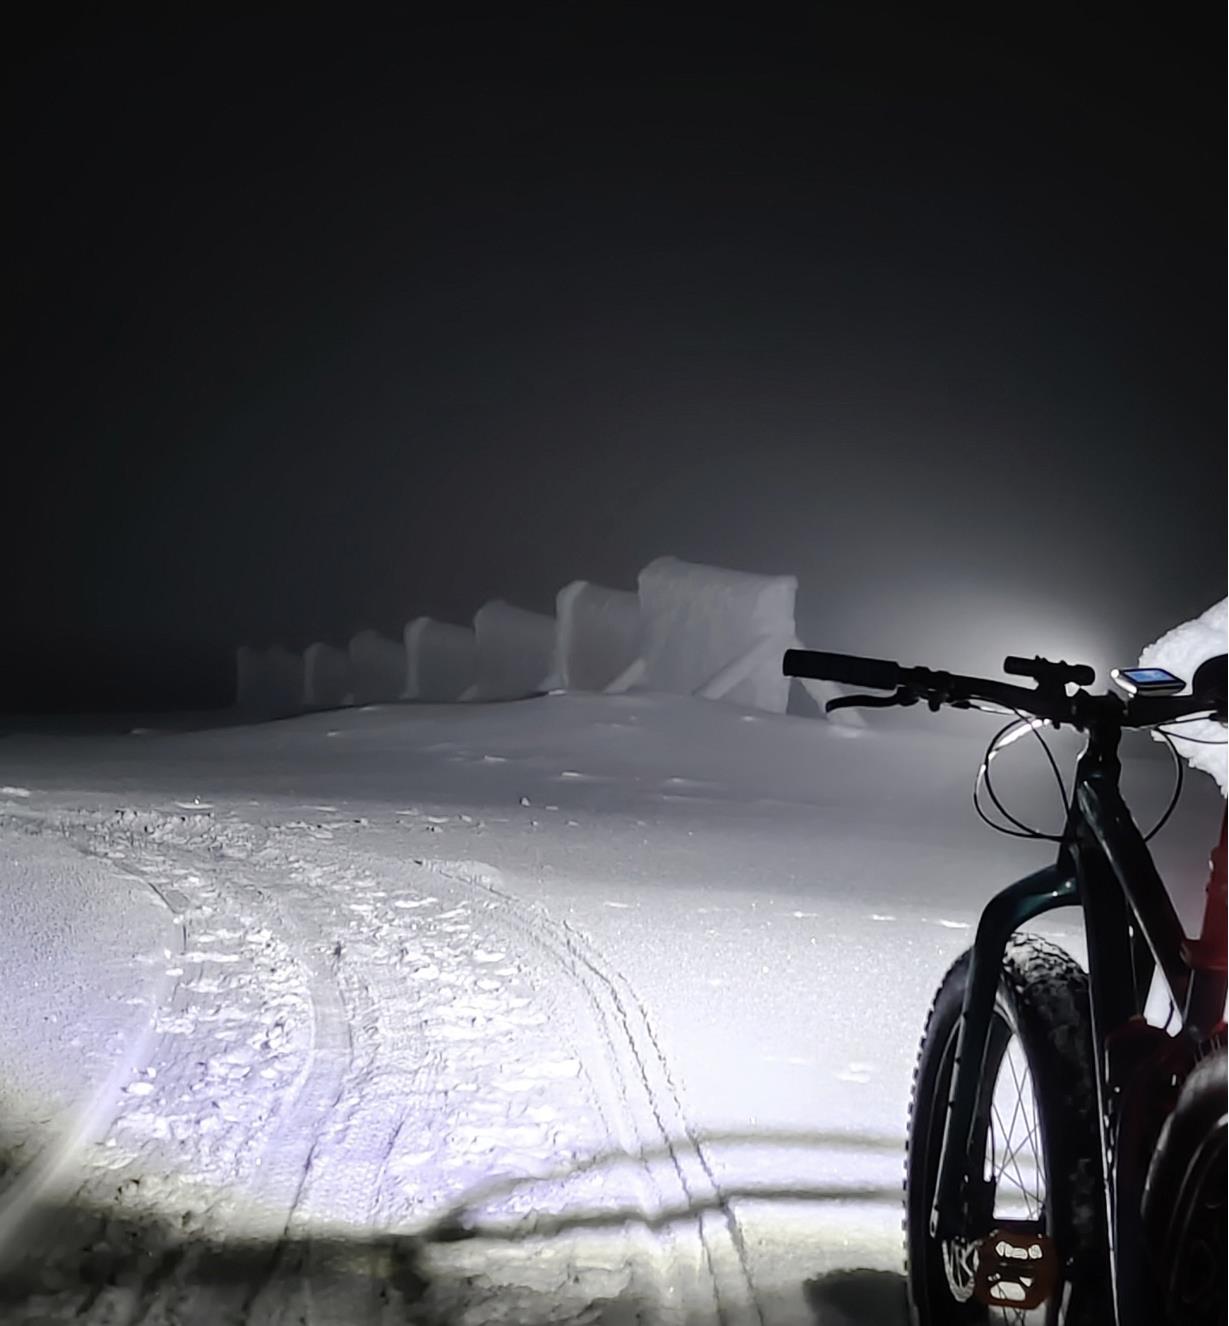 Lampe Suprabeam M6xr fixée au guidon d'un vélo et éclairant un chemin enneigé de nuit